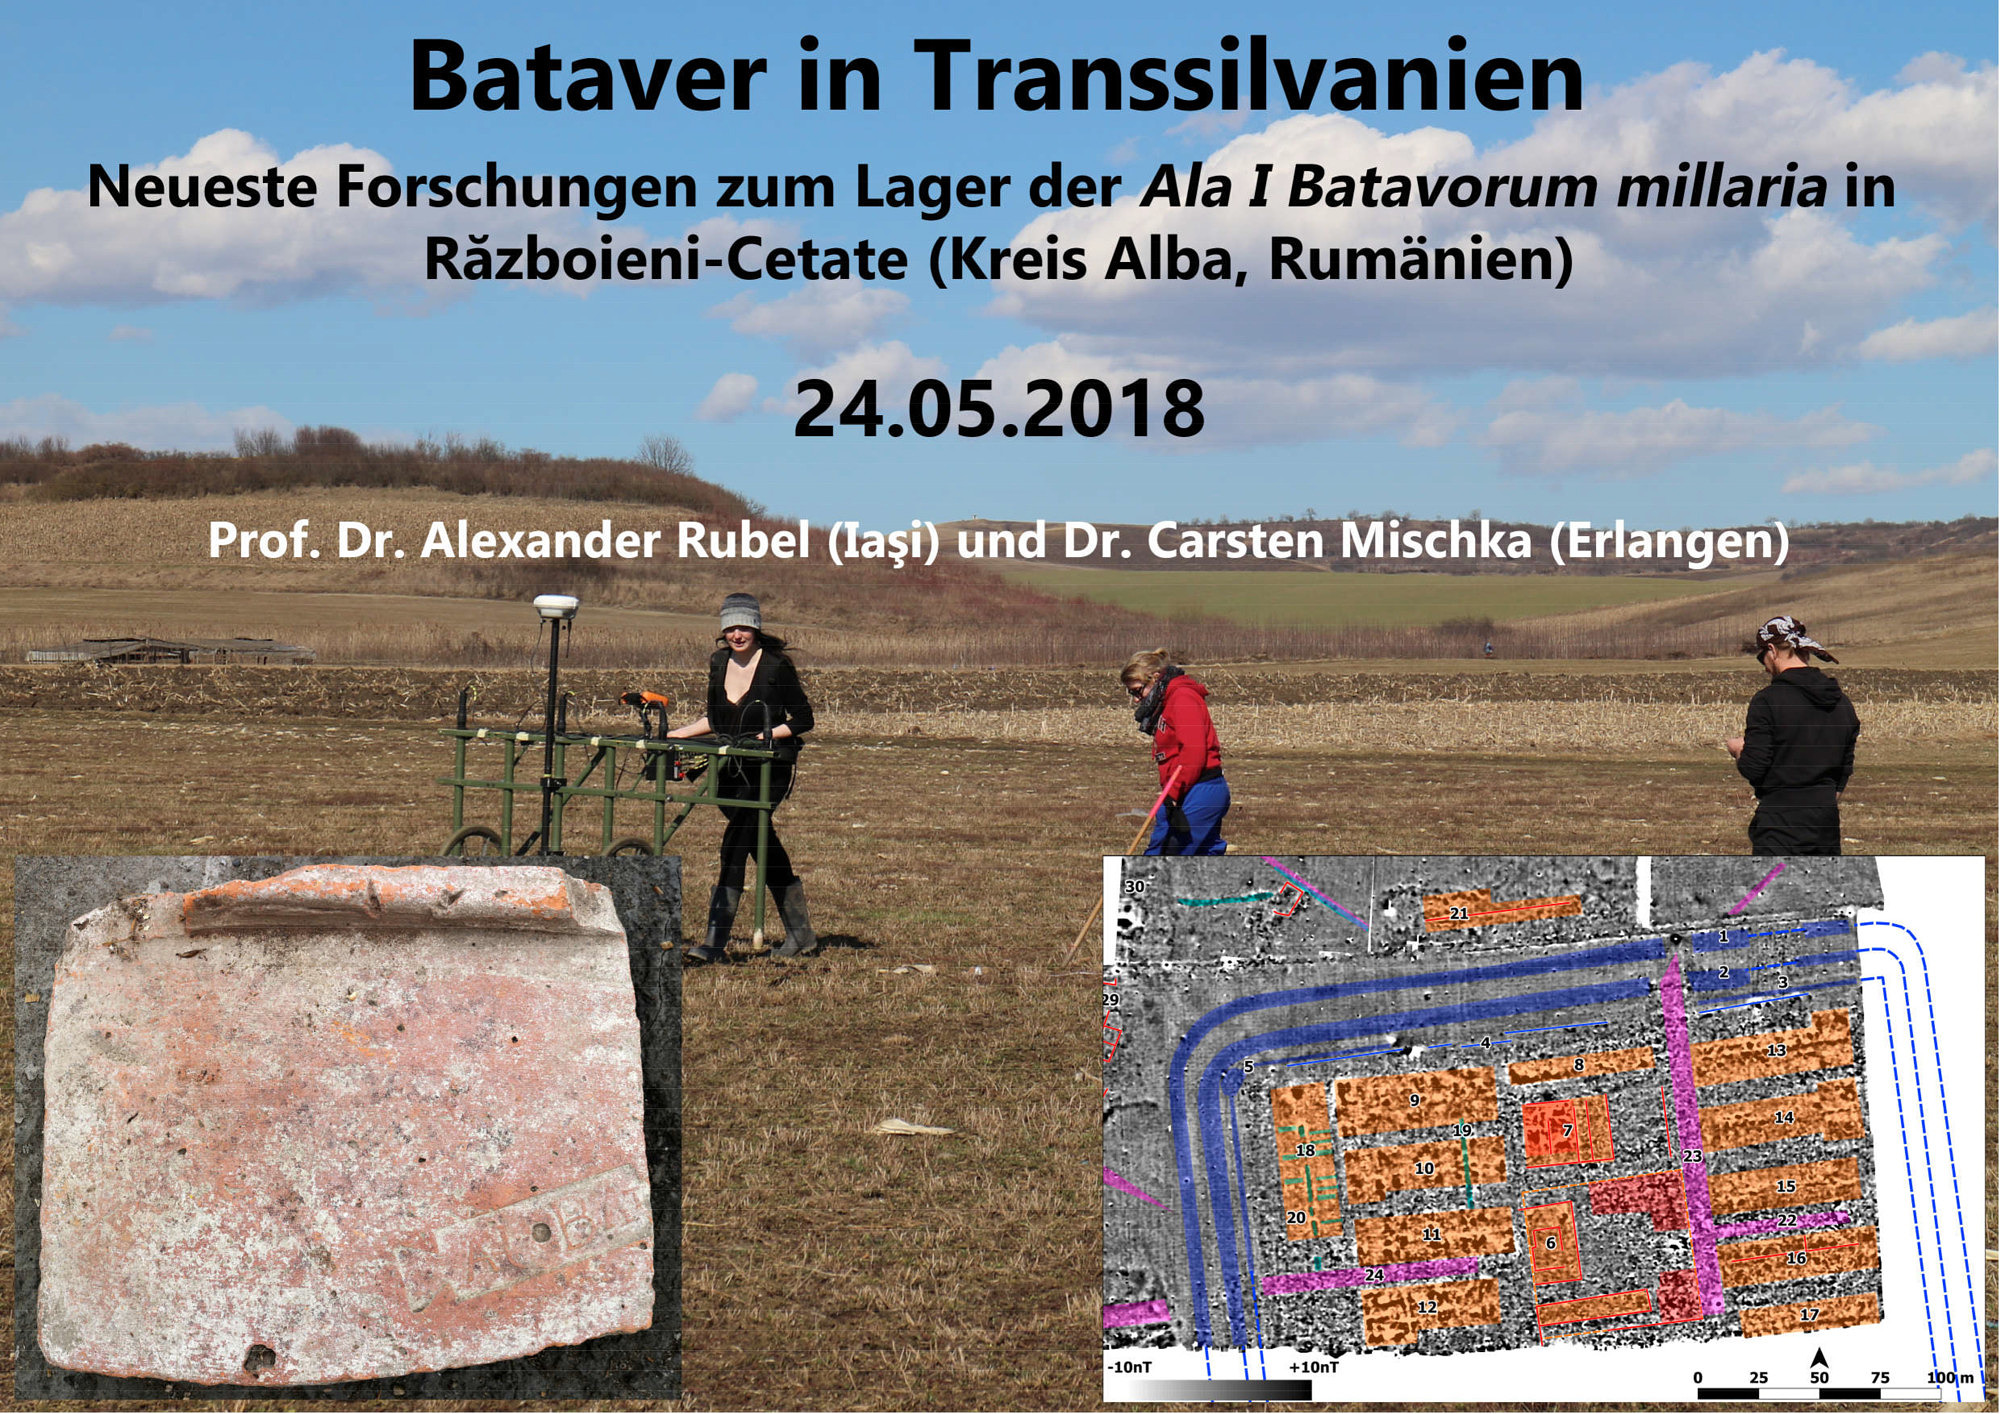 Bataver in Transsilvanien – Neueste Forschungen zum Lager der Ala I Batavorum millaria Războieni-Cetate